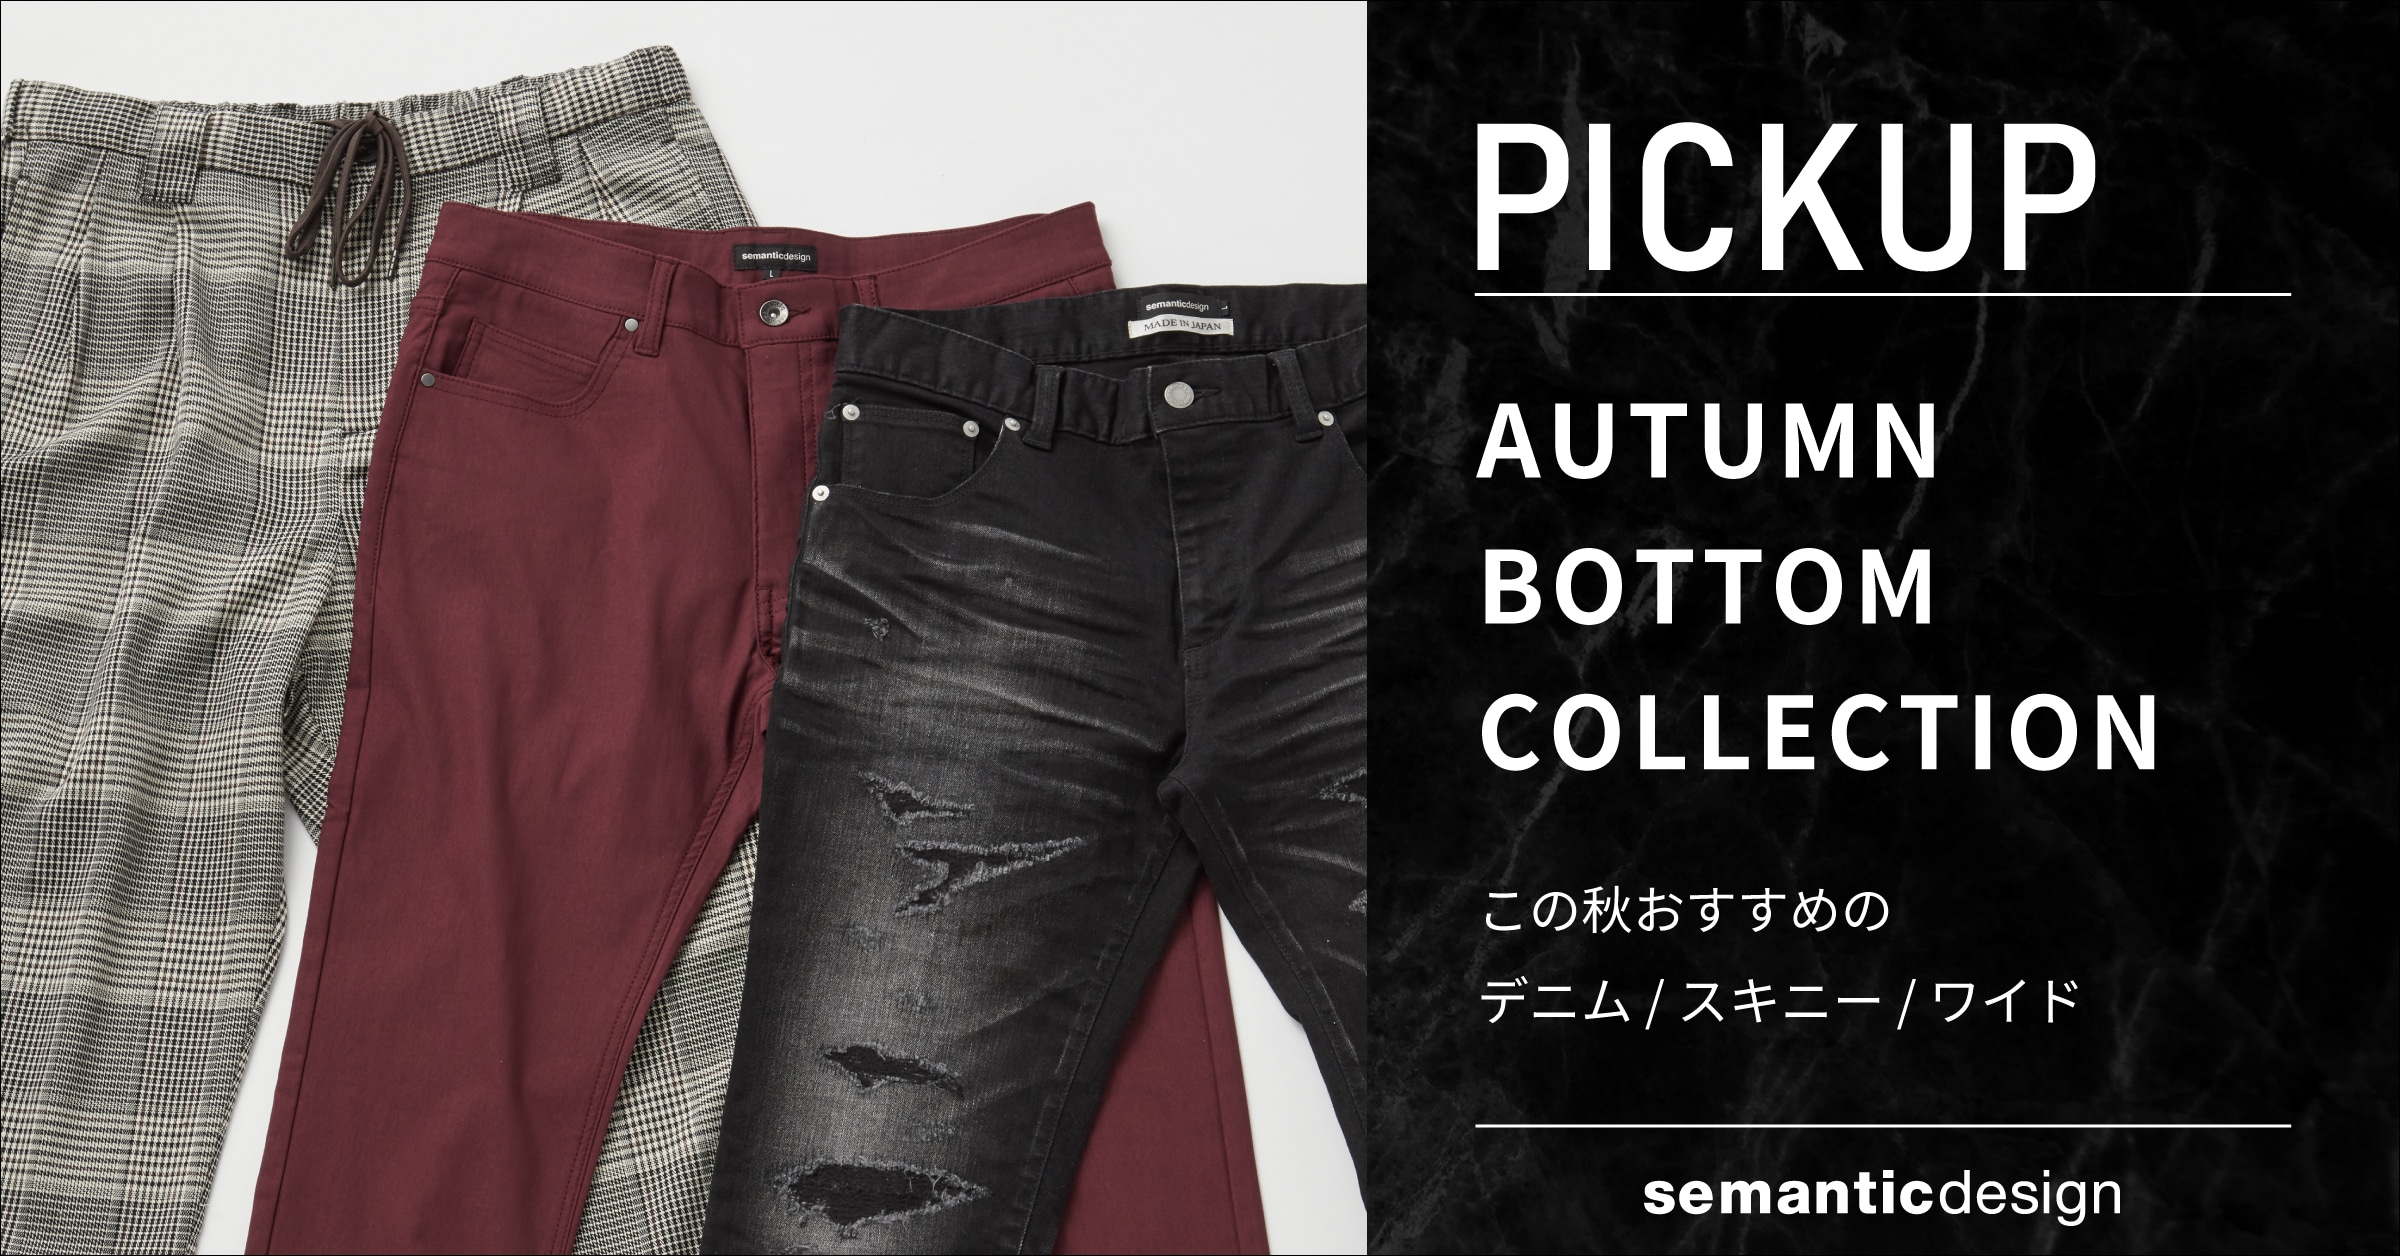 semanticdesign autumn bottom collection